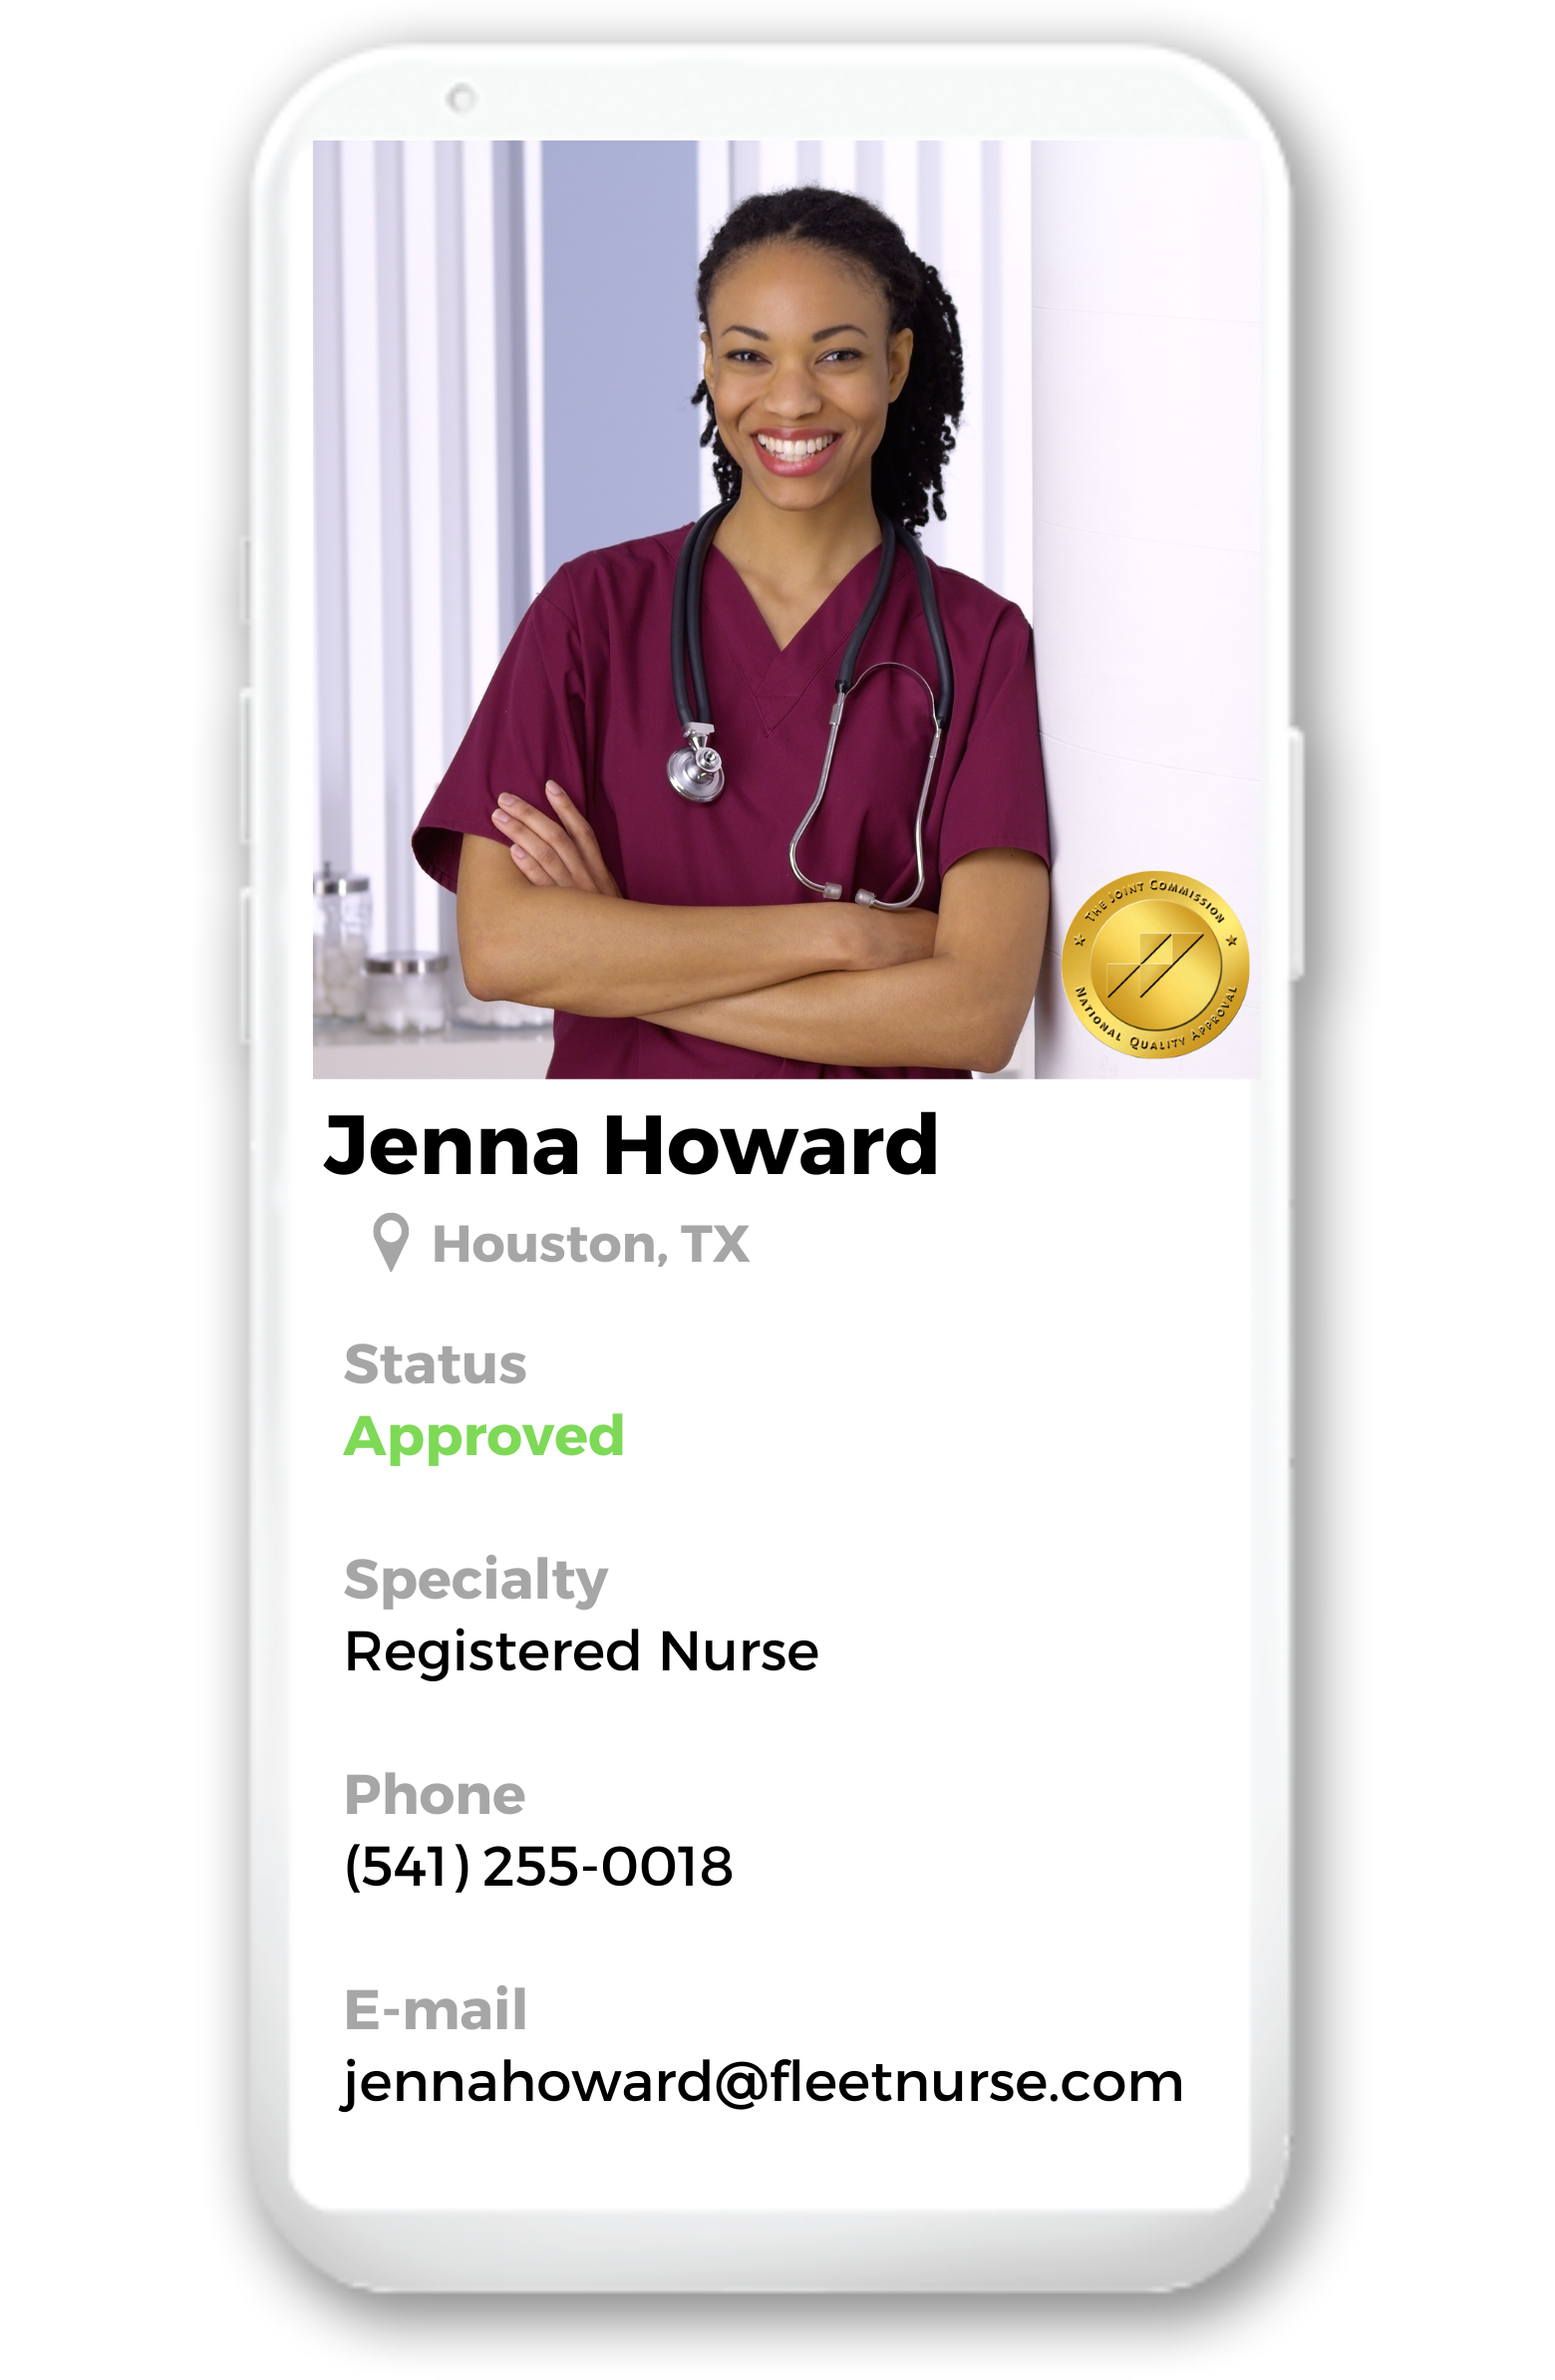 Copy of Nurse Profile on Phone